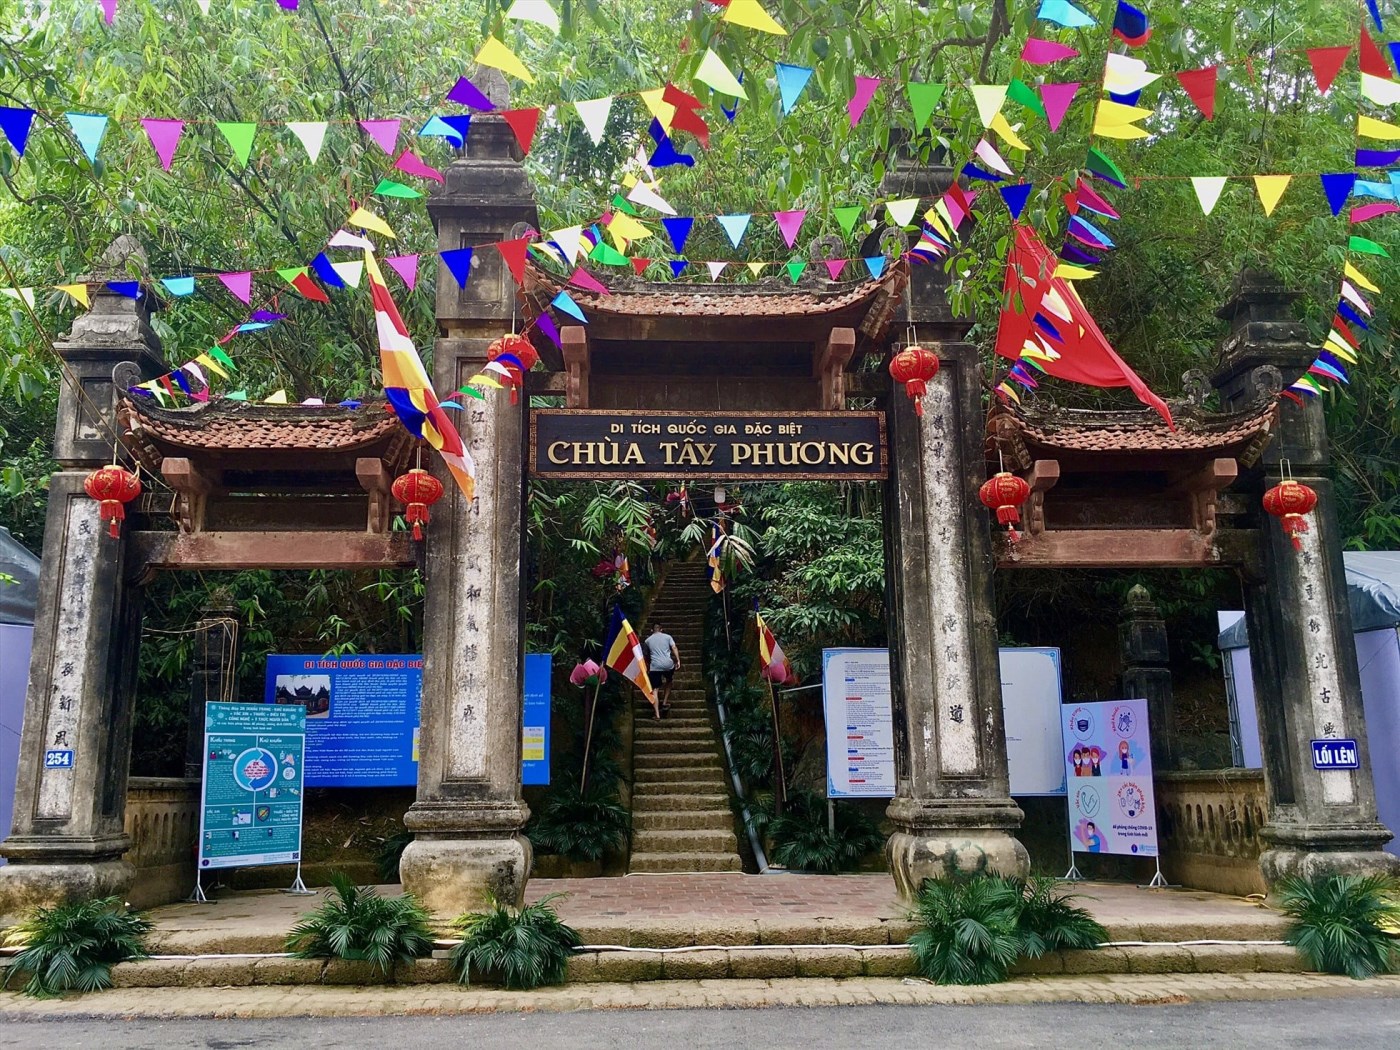  Chùa Tây Phương với 250 bậc đá lên chùa, một điểm đến không thế bỏ qua với nhiều du khách khi muốn tìm hiếu về văn hóa Phật giáo Việt Nam.